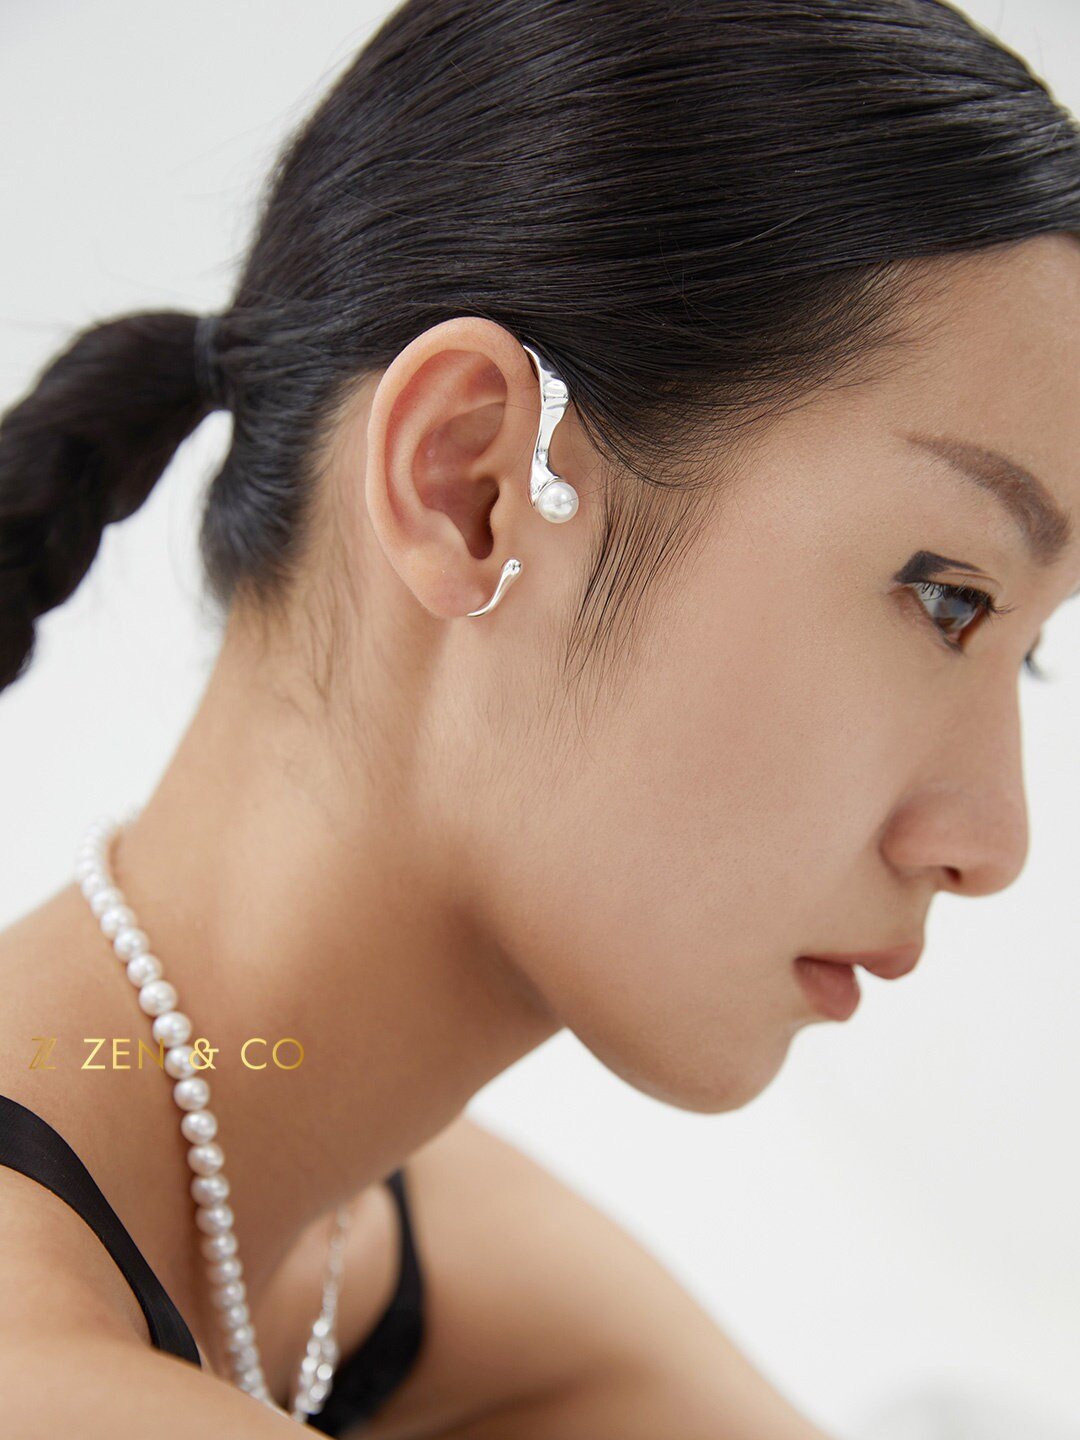 GRIMES Futuristic statement ear cuff - ZEN&CO Studio